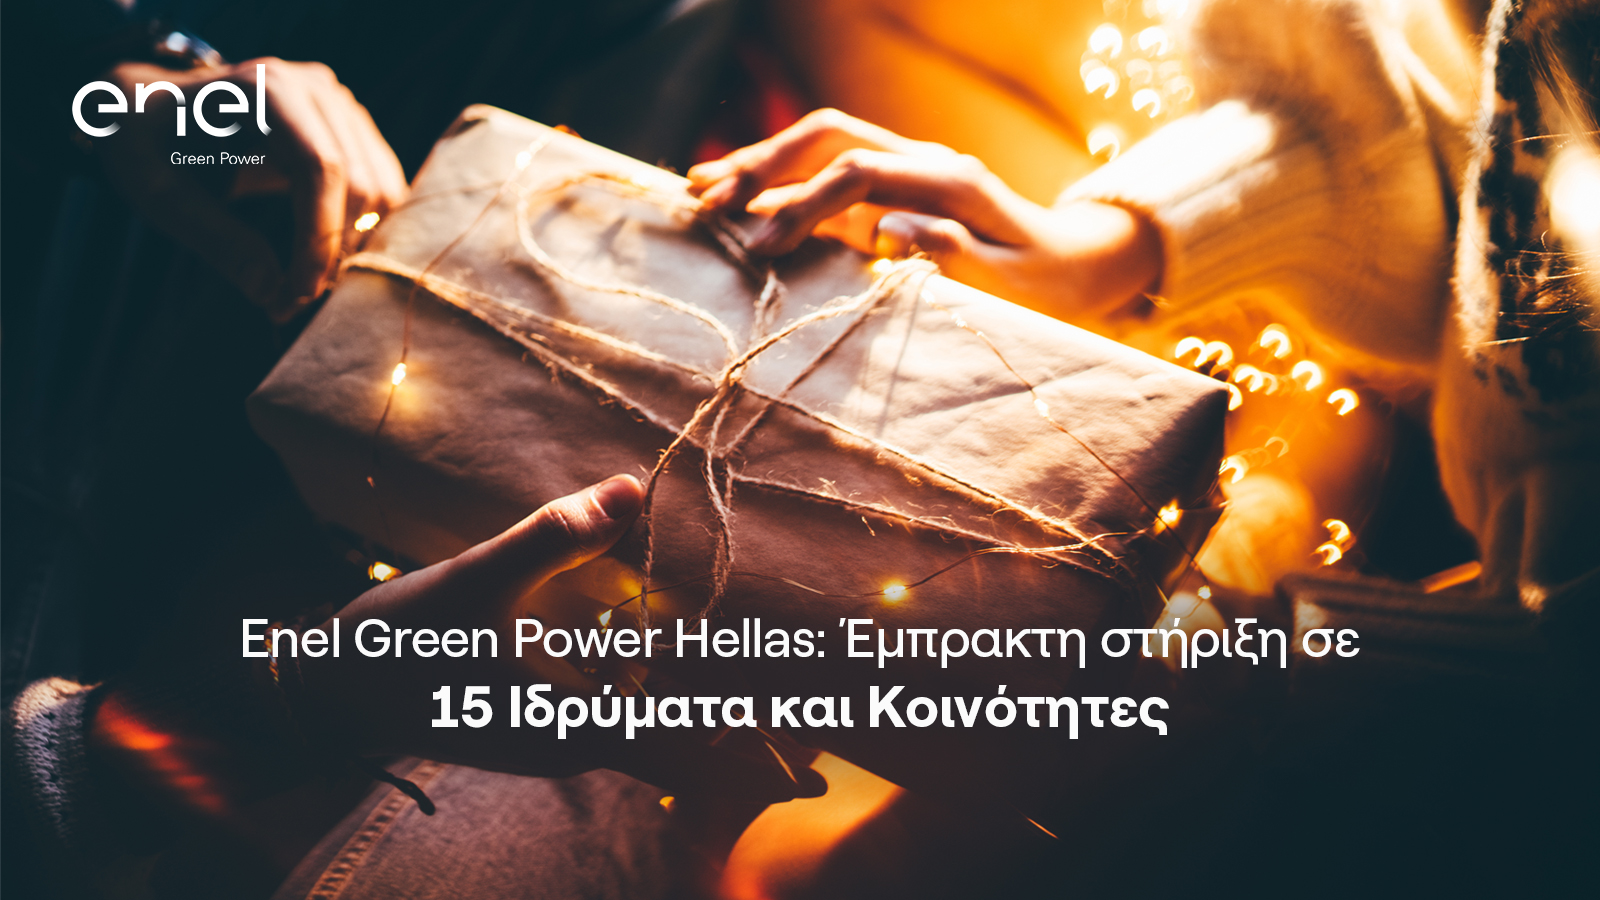 Εκατοντάδες ωφελούμενοι από την οικονομική στήριξη της Enel Green Power Hellas σε 15 Ιδρύματα και Κοινότητες ανά την Ελλάδα